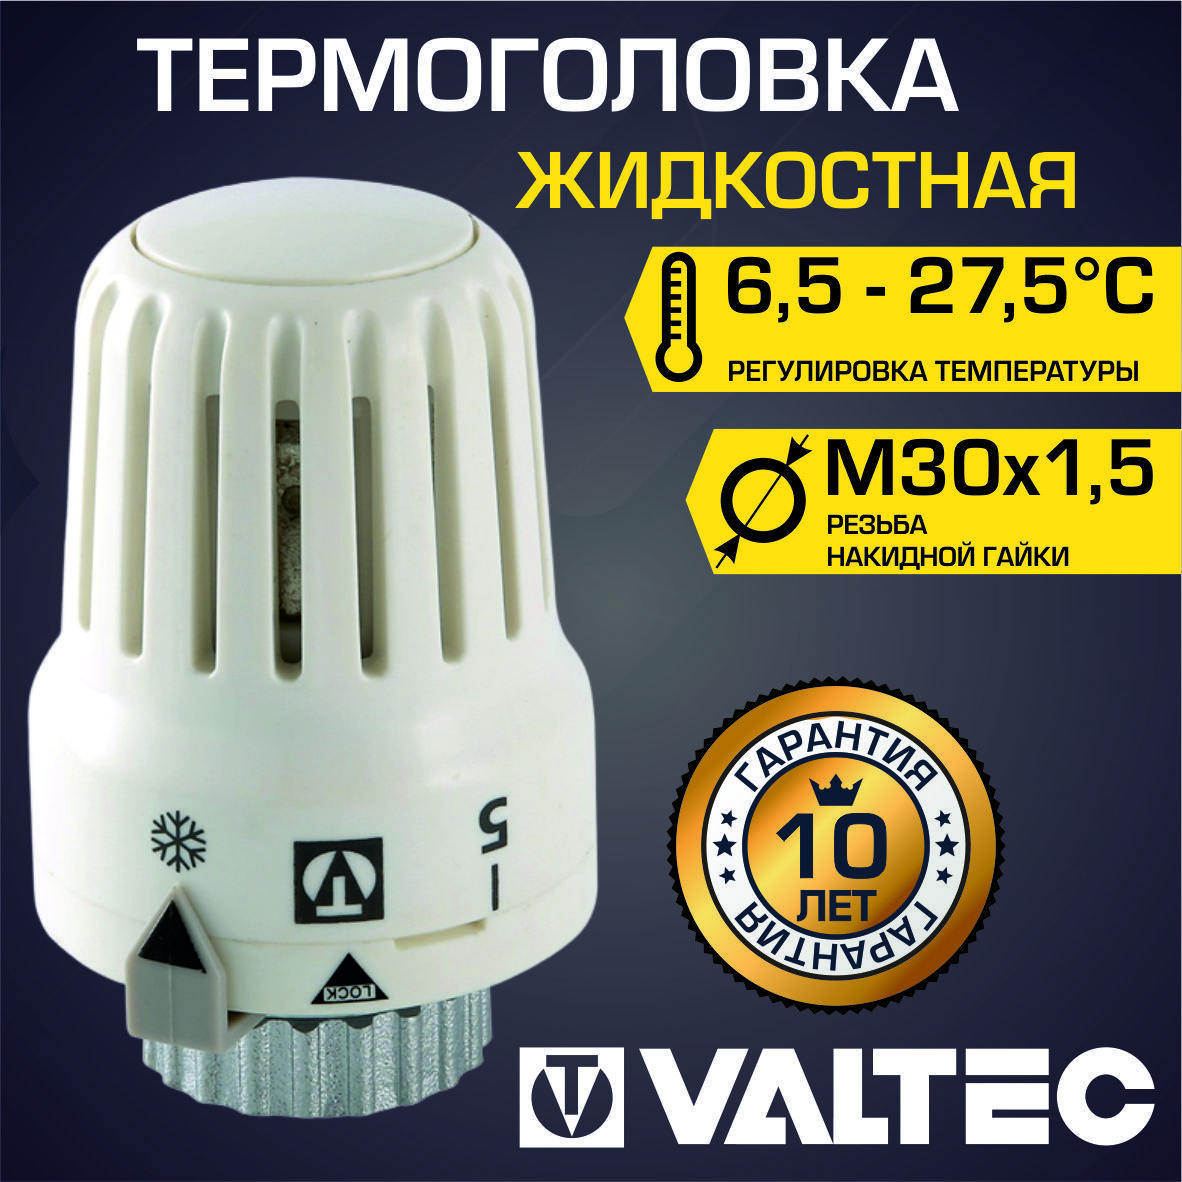 Термоголовка для радиатора М30x1,5 VALTEC, жидкостная (диапазон регулировки  t: 6.5-27.5 градусов) / Термостатическая головка на батарею отопления, арт.  VT.3000.0.0 - купить в интернет-магазине OZON по выгодной цене (686612237)